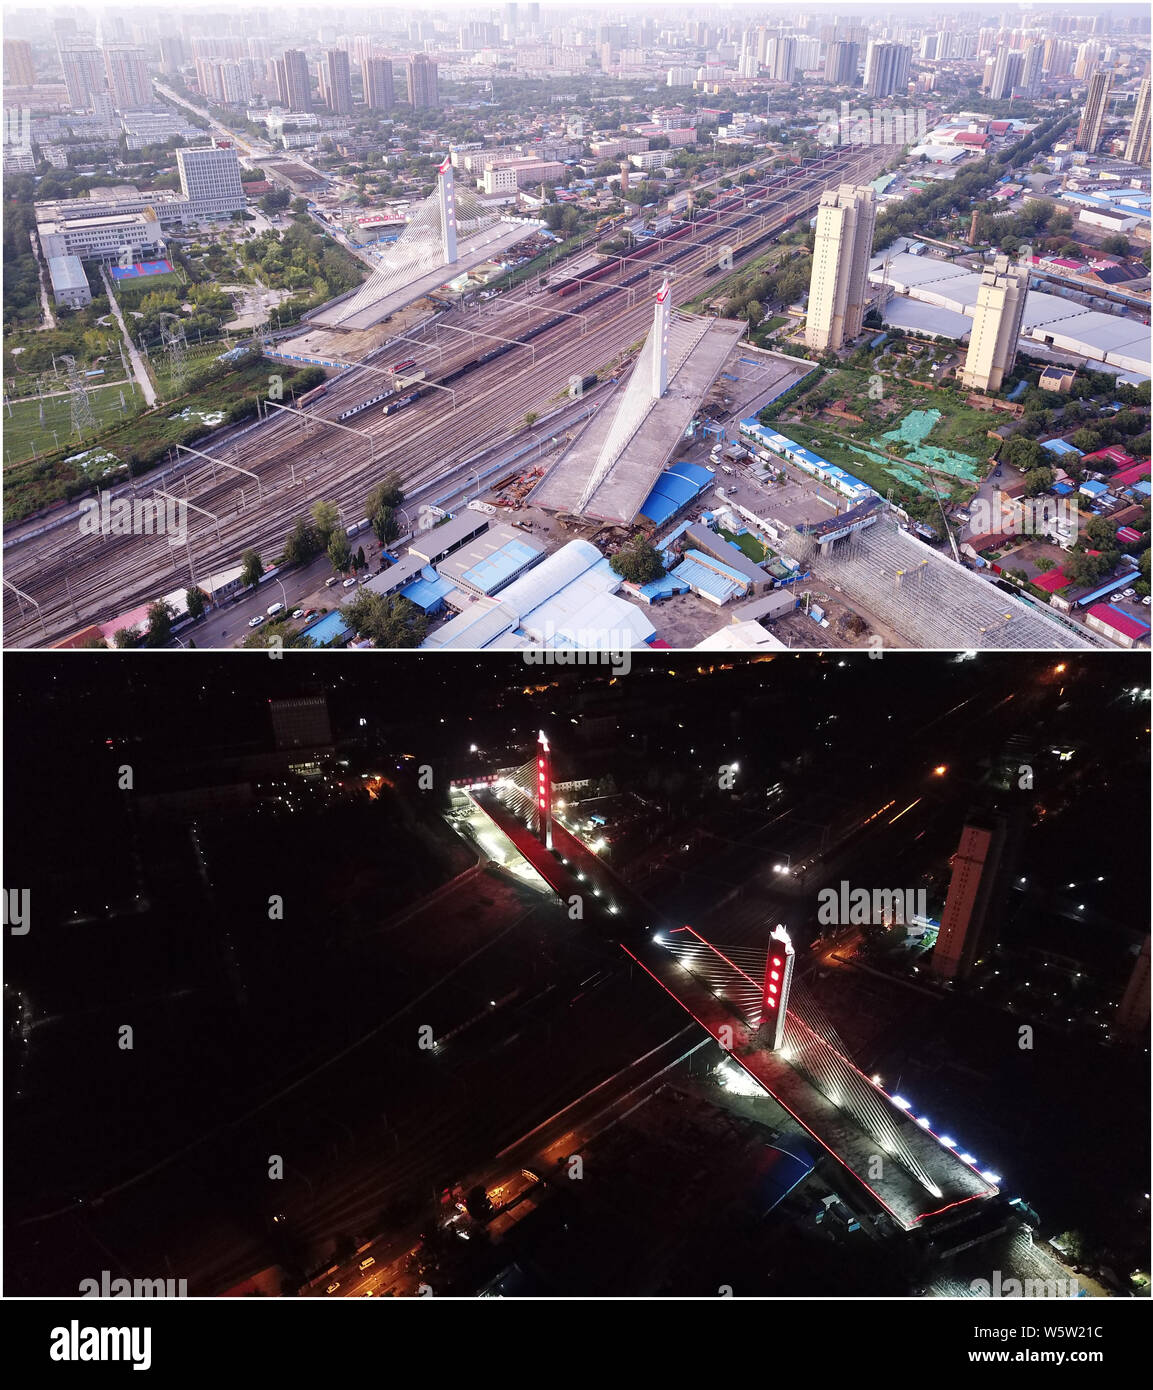 (190730) -- BAODING, 30 juillet 2019 (Xinhua) -- ce combo photo montre deux parties d'un pont au-dessus du chemin de fer Beijing-Guangzhou avant (haut, photo prise le 29 juillet 2019) et après (bas, photo prise le 30 juillet 2019) ils sont bien tourné pour leurs postes ciblés à l'aide de la méthode de construction de fusée à Baoding, province de Hebei en Chine du nord. La Chine a adopté la méthode de construction de fusée dans la construction de nombreux ponts afin de minimiser les perturbations sur le trafic ci-dessous. La méthode aide à surmonter les contraintes de l'environnement et de trafic, tout en raccourcissant la période de construction. (Yucheng Garden Banque D'Images